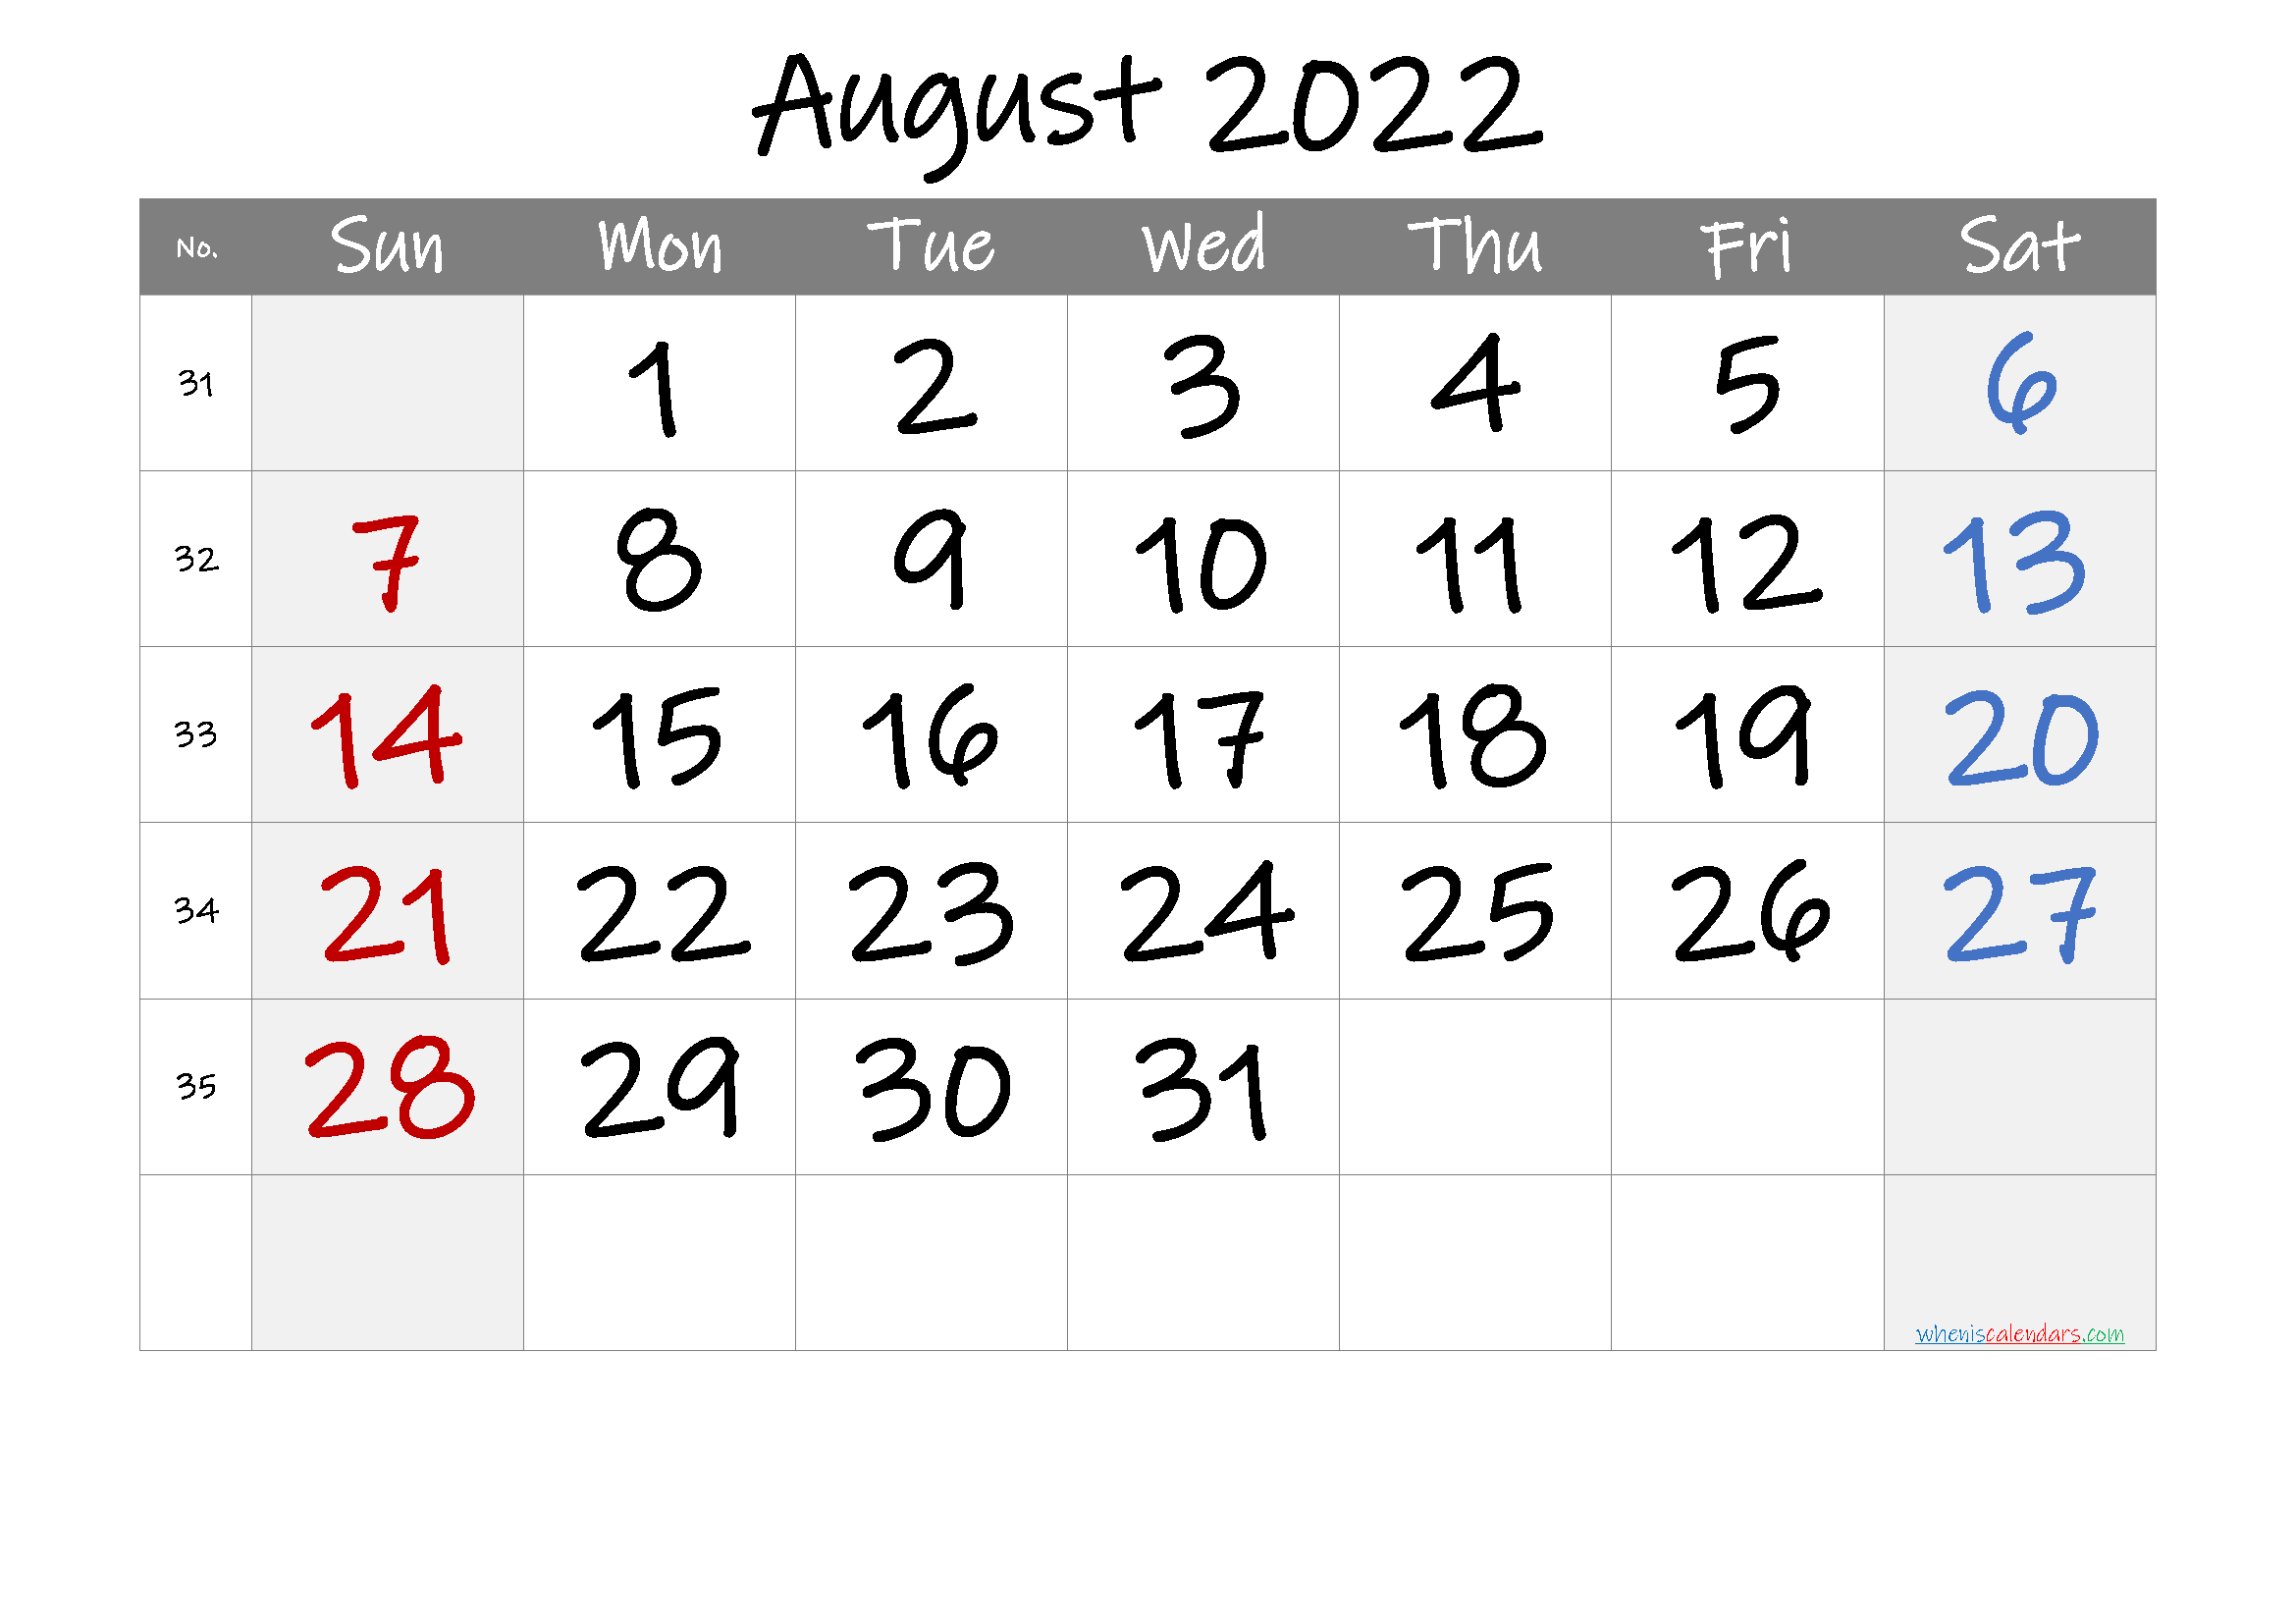 August 2022 Printable Calendar with Week Numbers - 6 ...